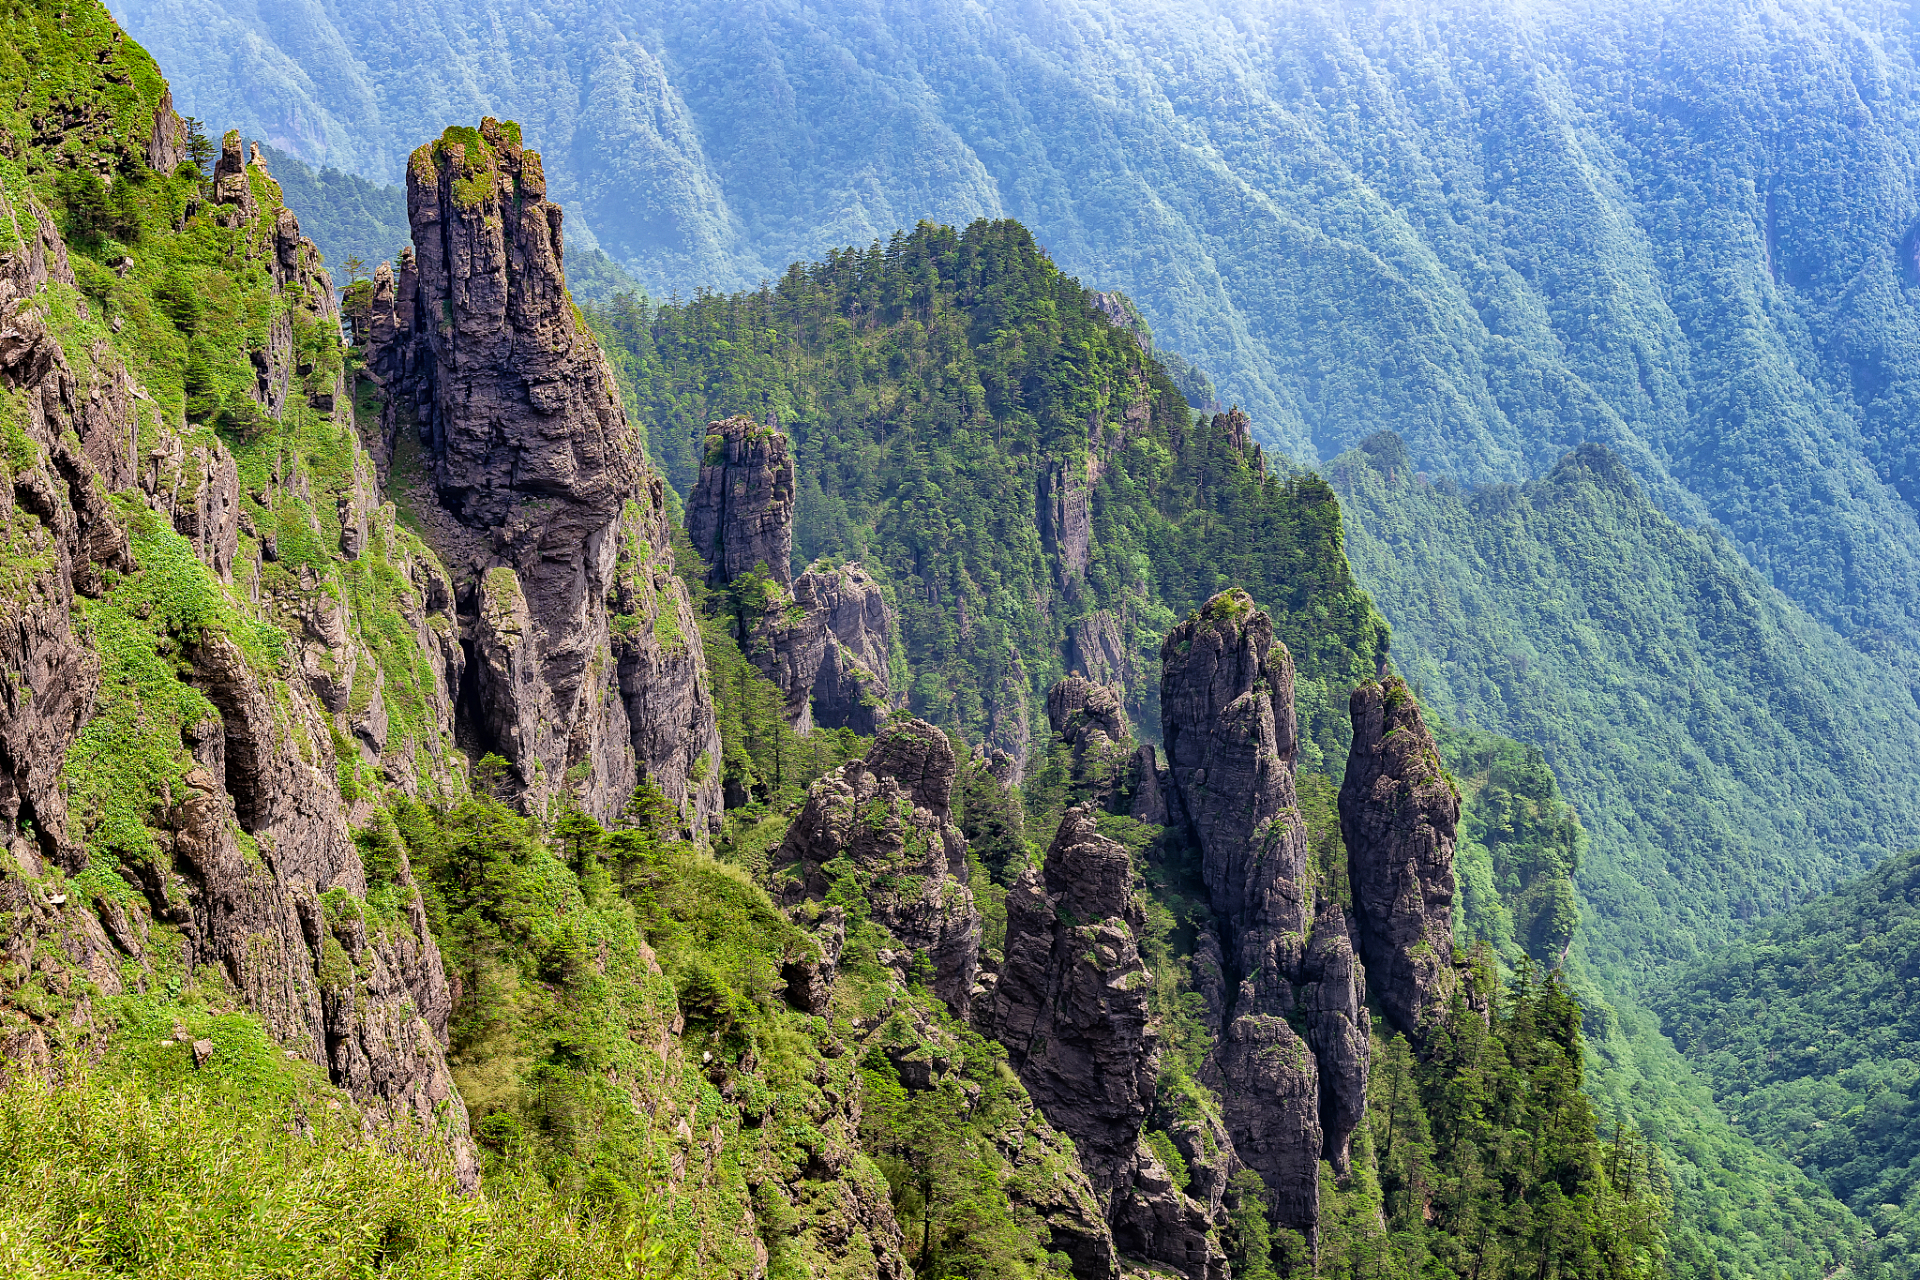 神农架:神农架位于湖北省西部,是一个神秘的原始森林地区